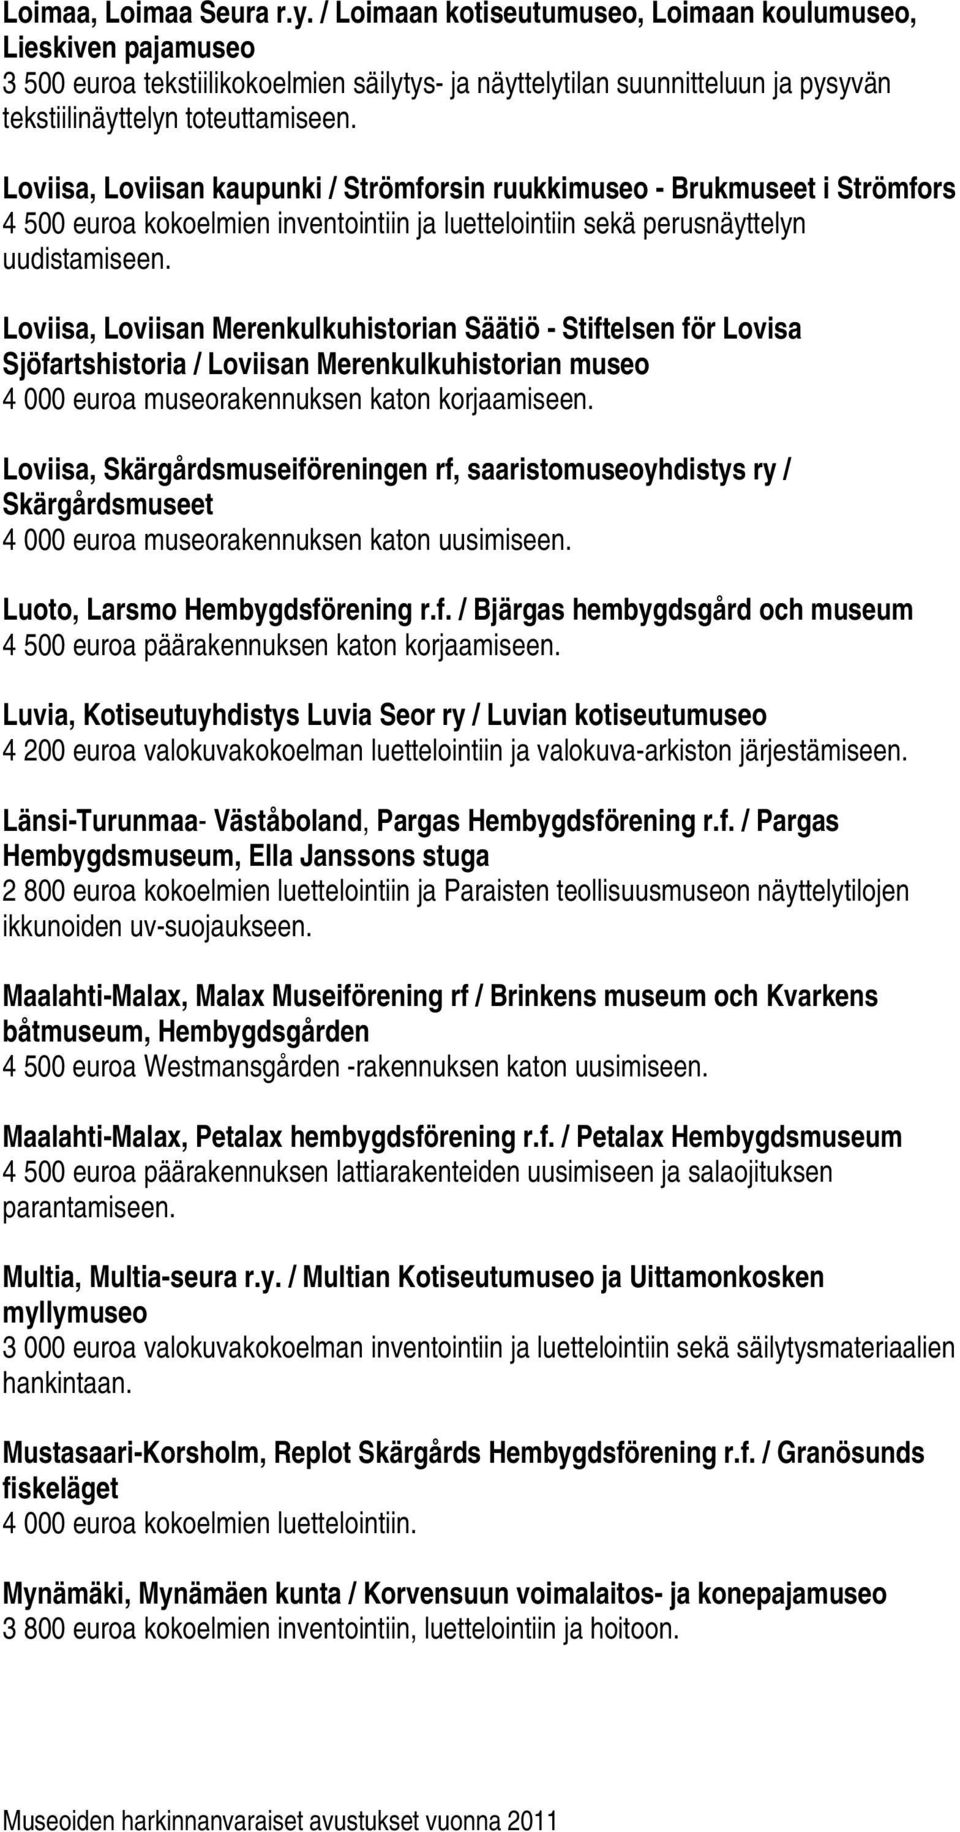 Loviisa, Loviisan kaupunki / Strömforsin ruukkimuseo - Brukmuseet i Strömfors 4 500 euroa kokoelmien inventointiin ja luettelointiin sekä perusnäyttelyn uudistamiseen.